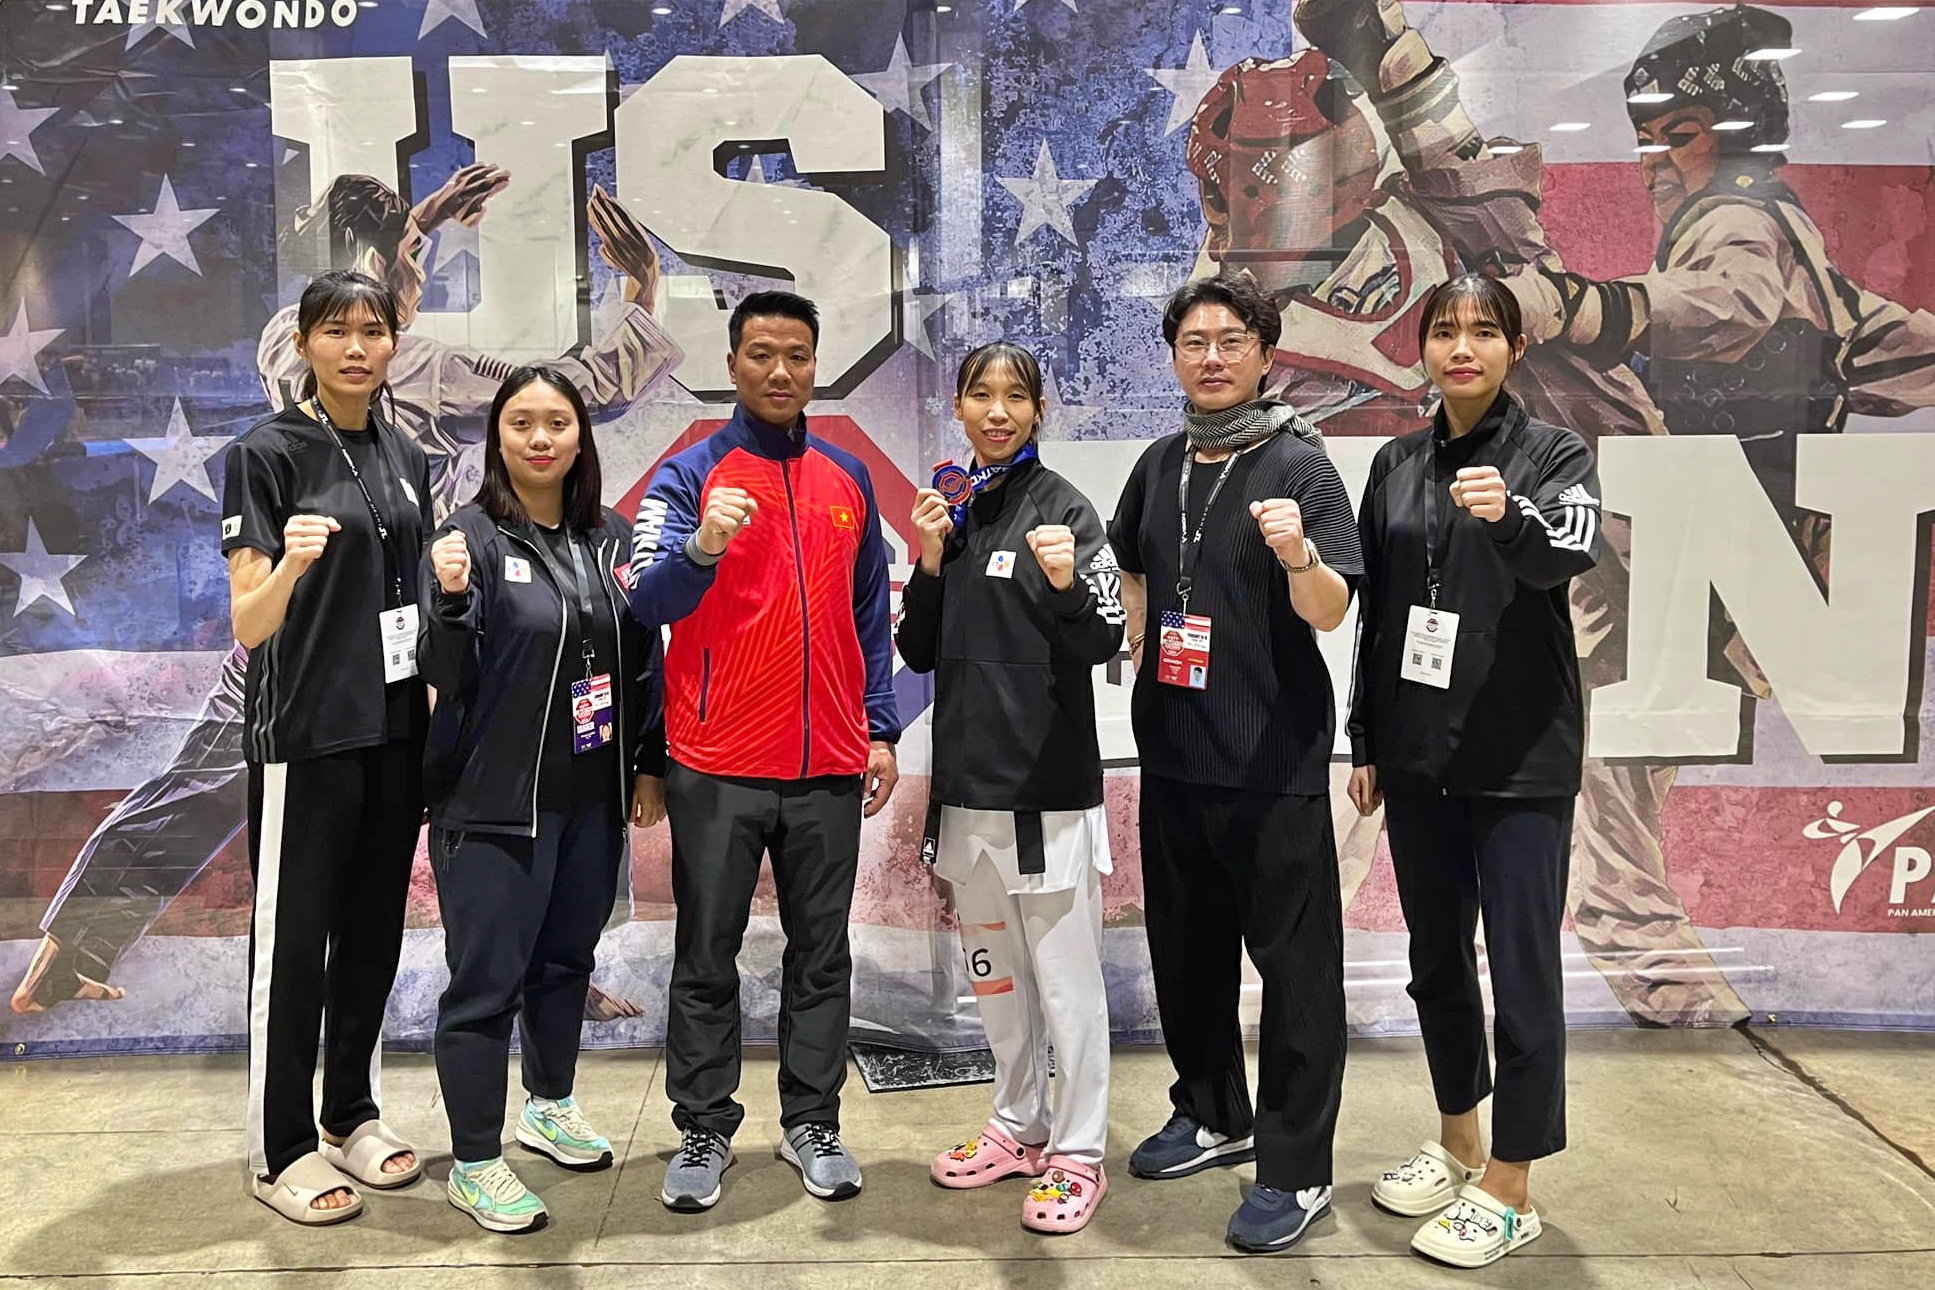 Nữ võ sĩ taekwondo Trương Thị Kim Tuyền giành HCB trên đất Mỹ- Ảnh 3.